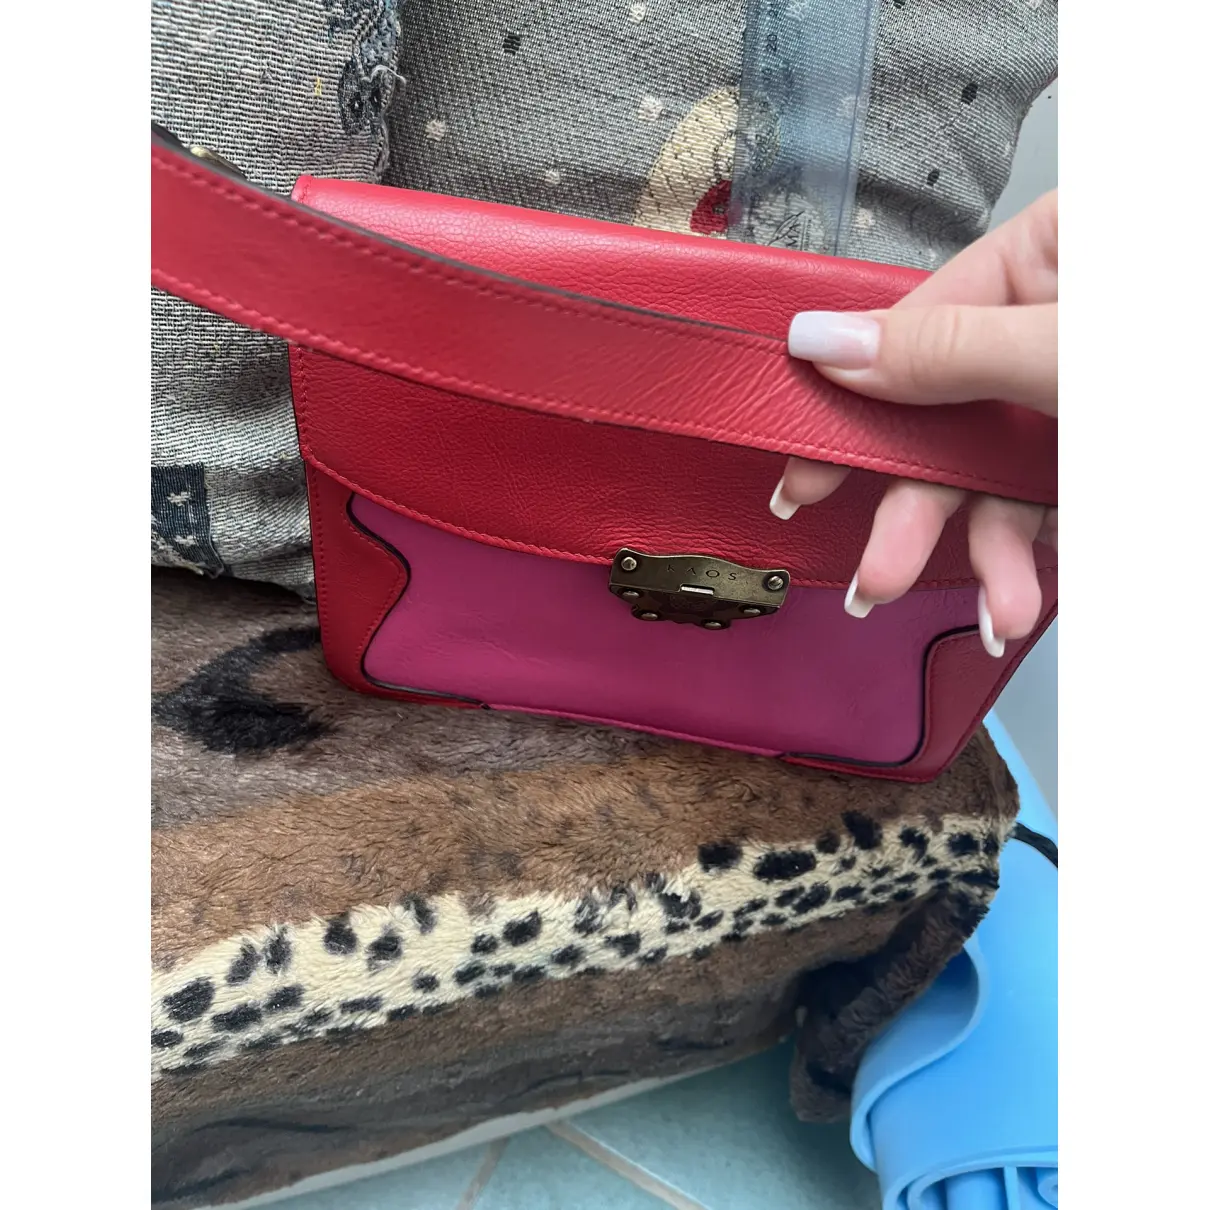 Leather handbag Kaos